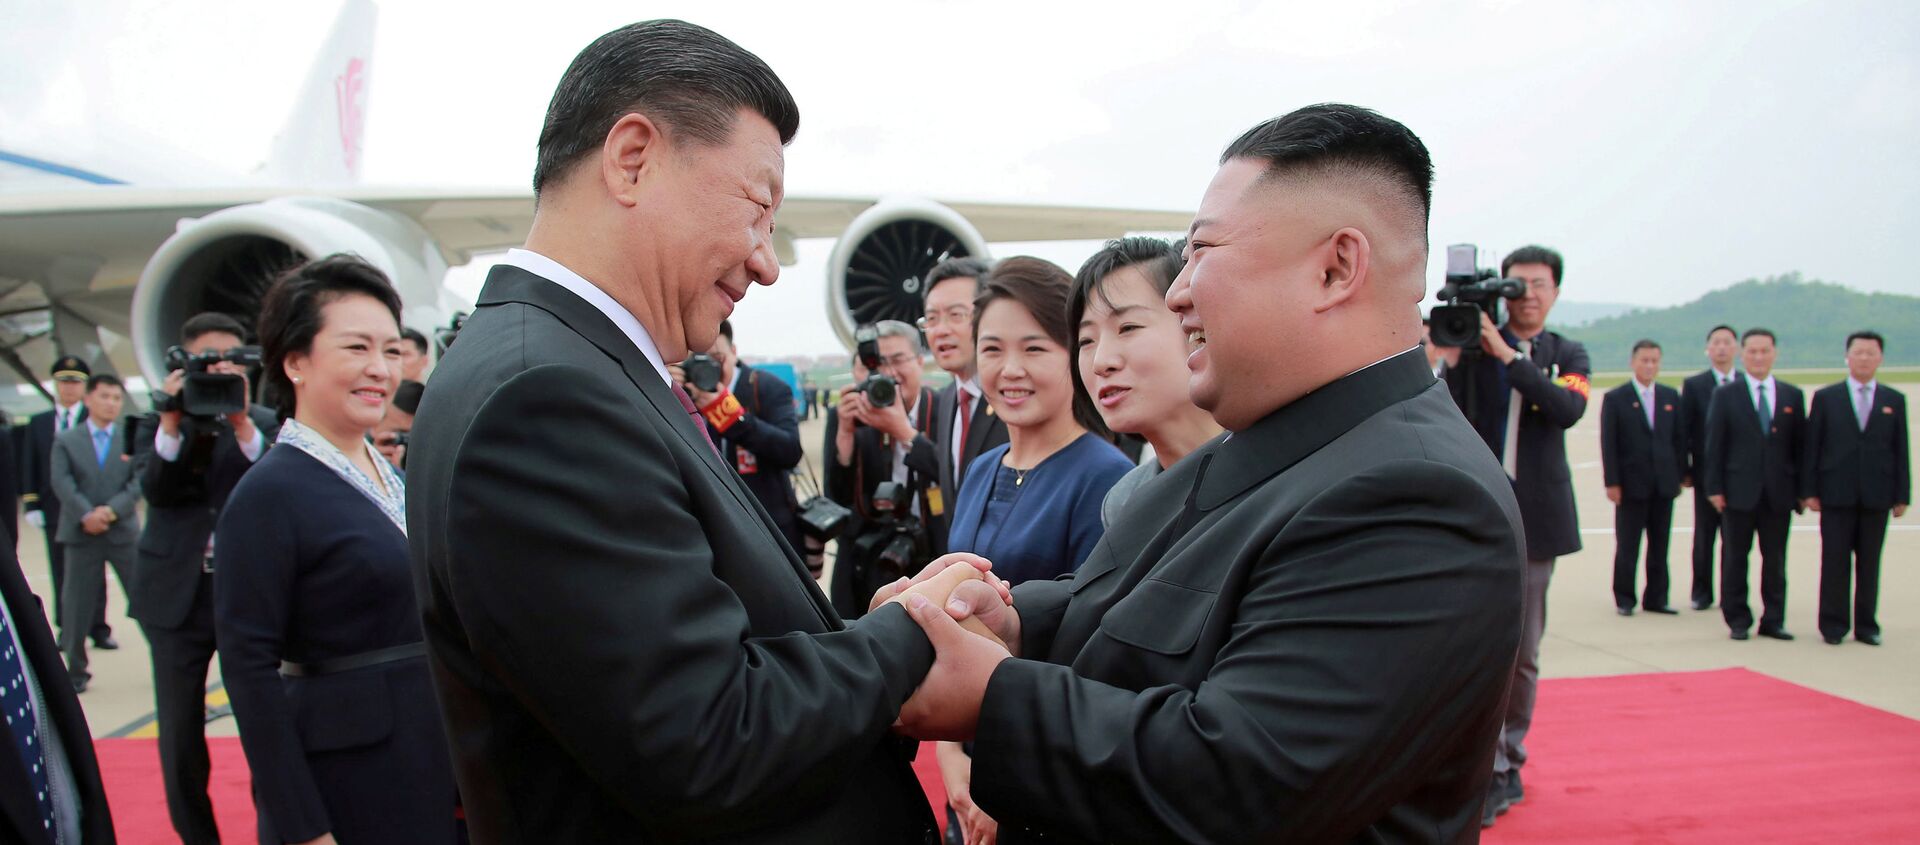 الزيارة الأولى من نوعها منذ 11 عاما، الرئيس الصيني شي جين بينغ يزور بيونغ يانغ، كوريا الشمالية 21 يونيو/ حزيران 2019 - سبوتنيك عربي, 1920, 24.07.2021